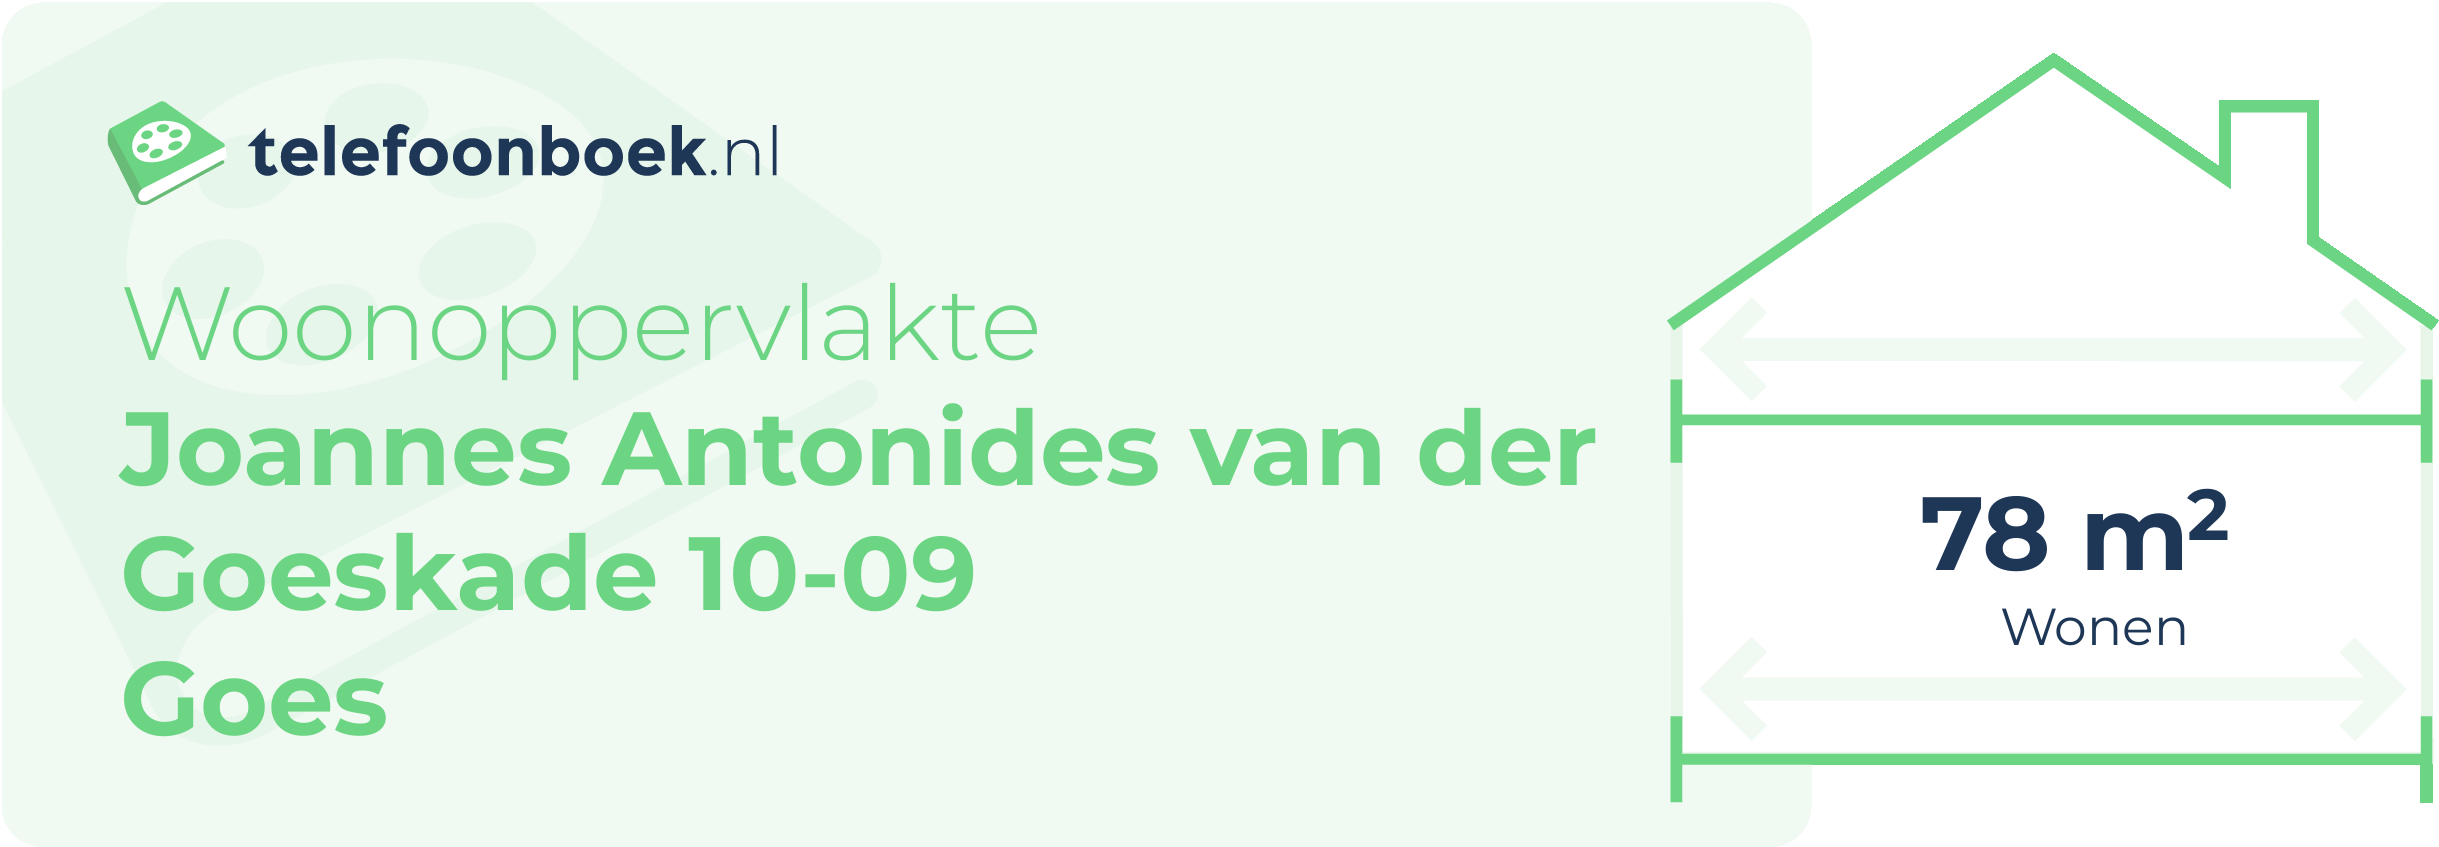 Woonoppervlakte Joannes Antonides Van Der Goeskade 10-09 Goes